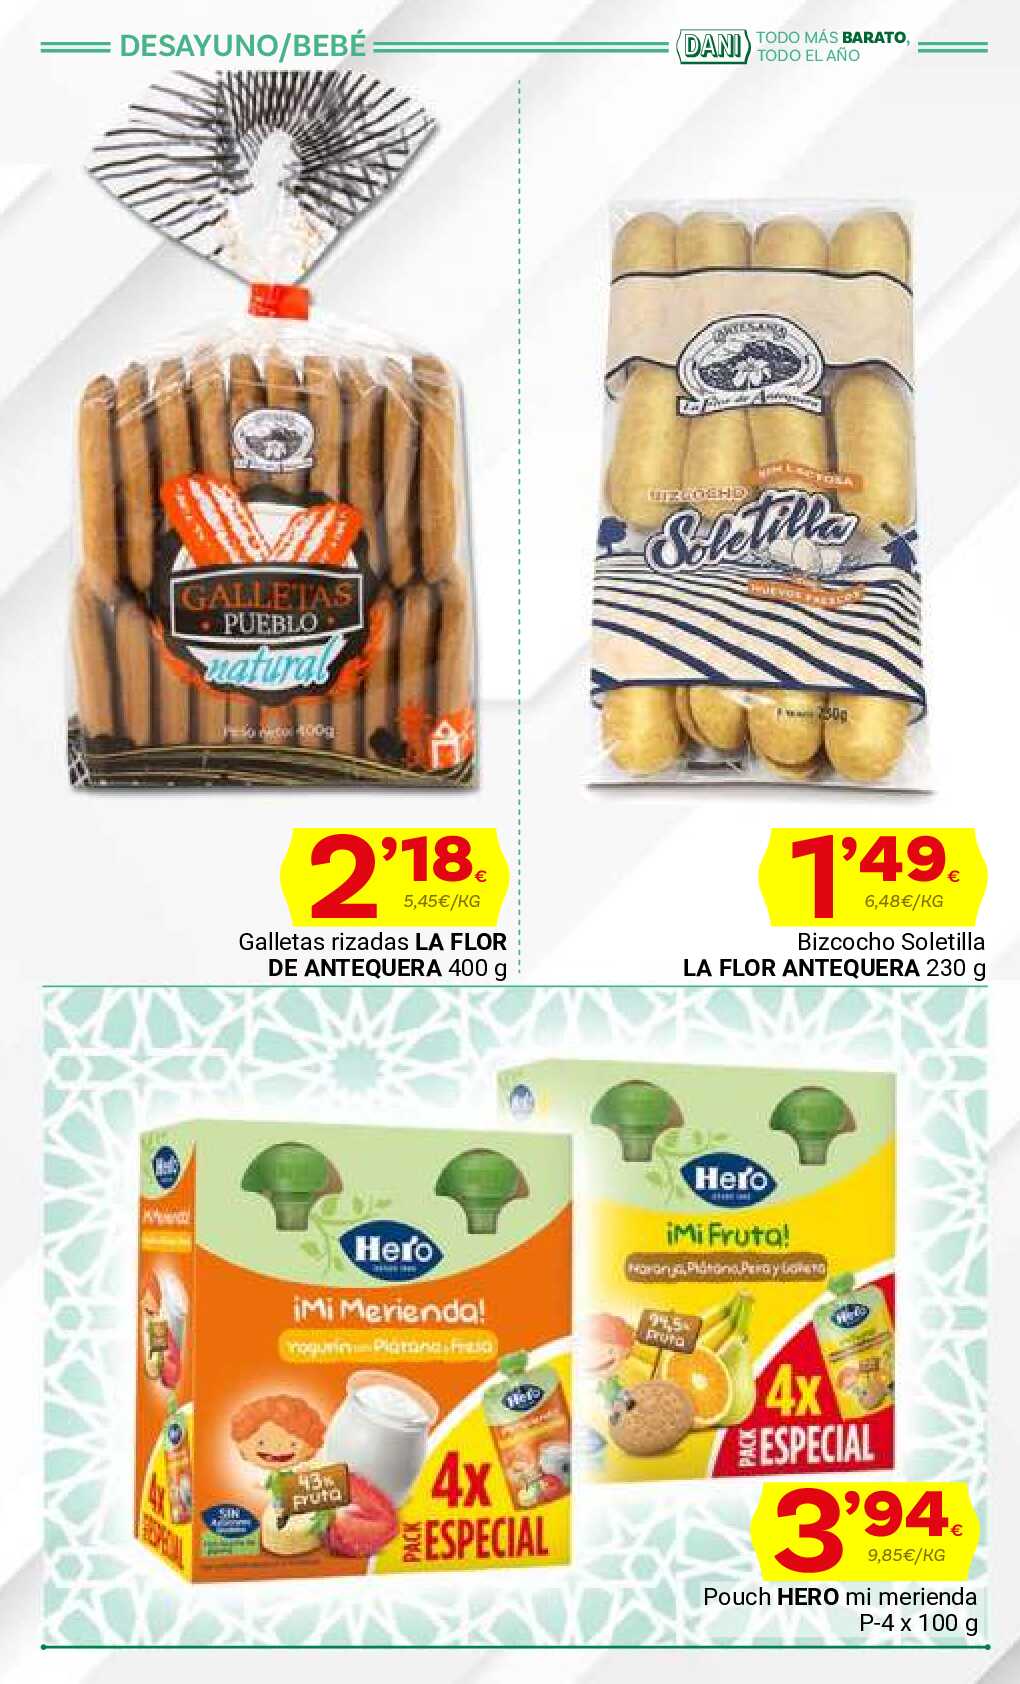 Ofertas con lo mejor de Andalucía Supermercado Dani. Página 14